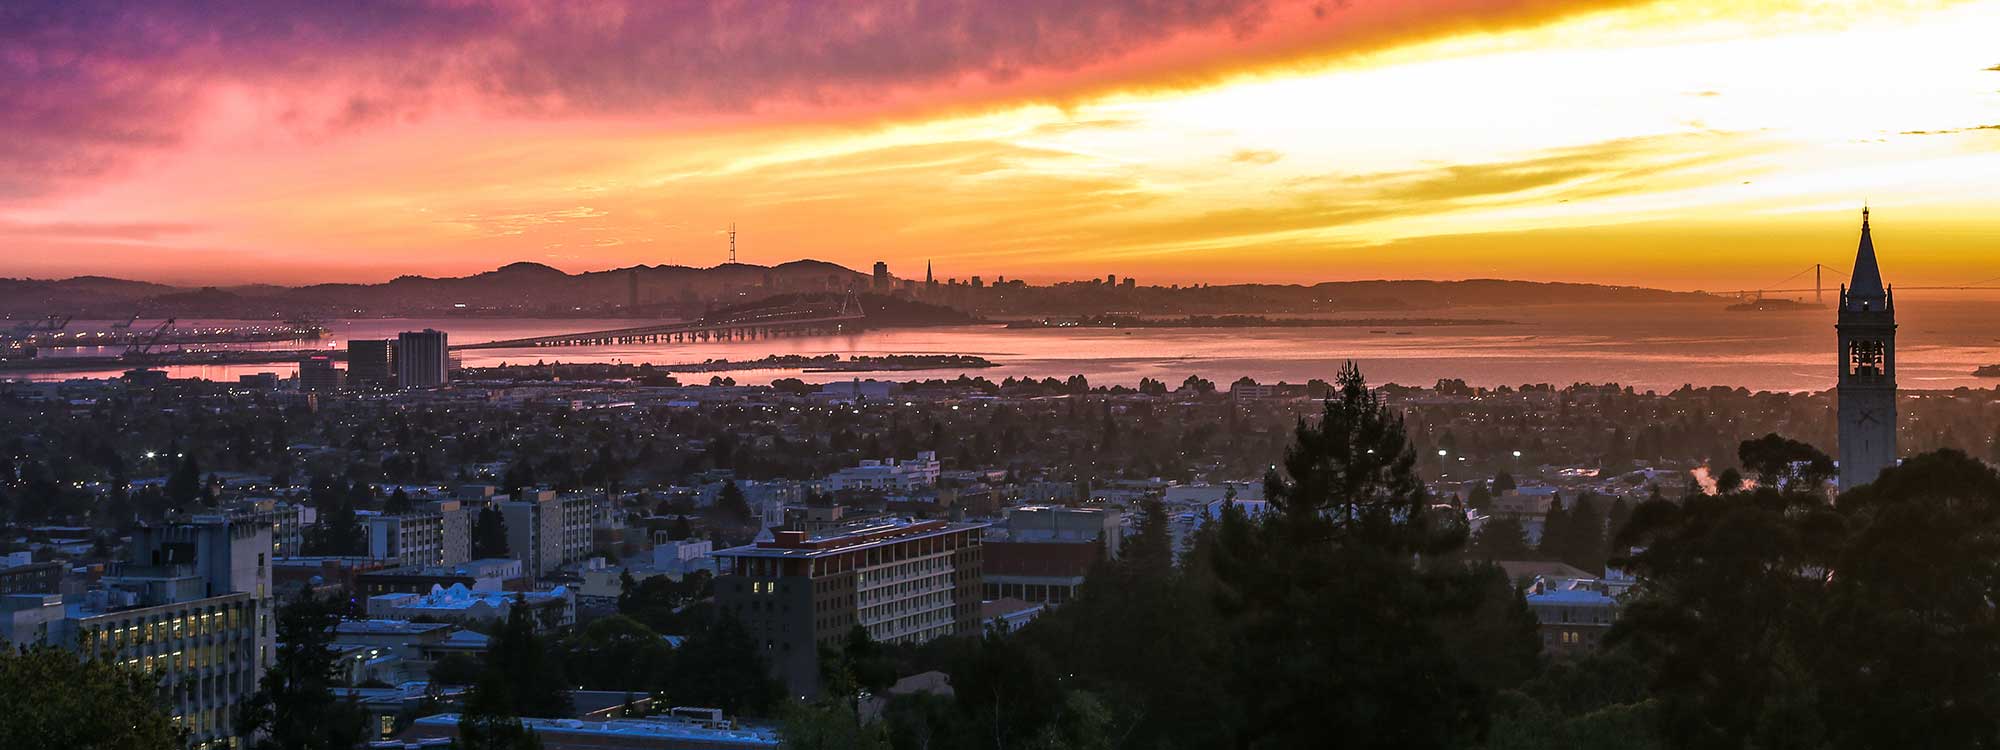 Berkeley Sunset by Josh Parks